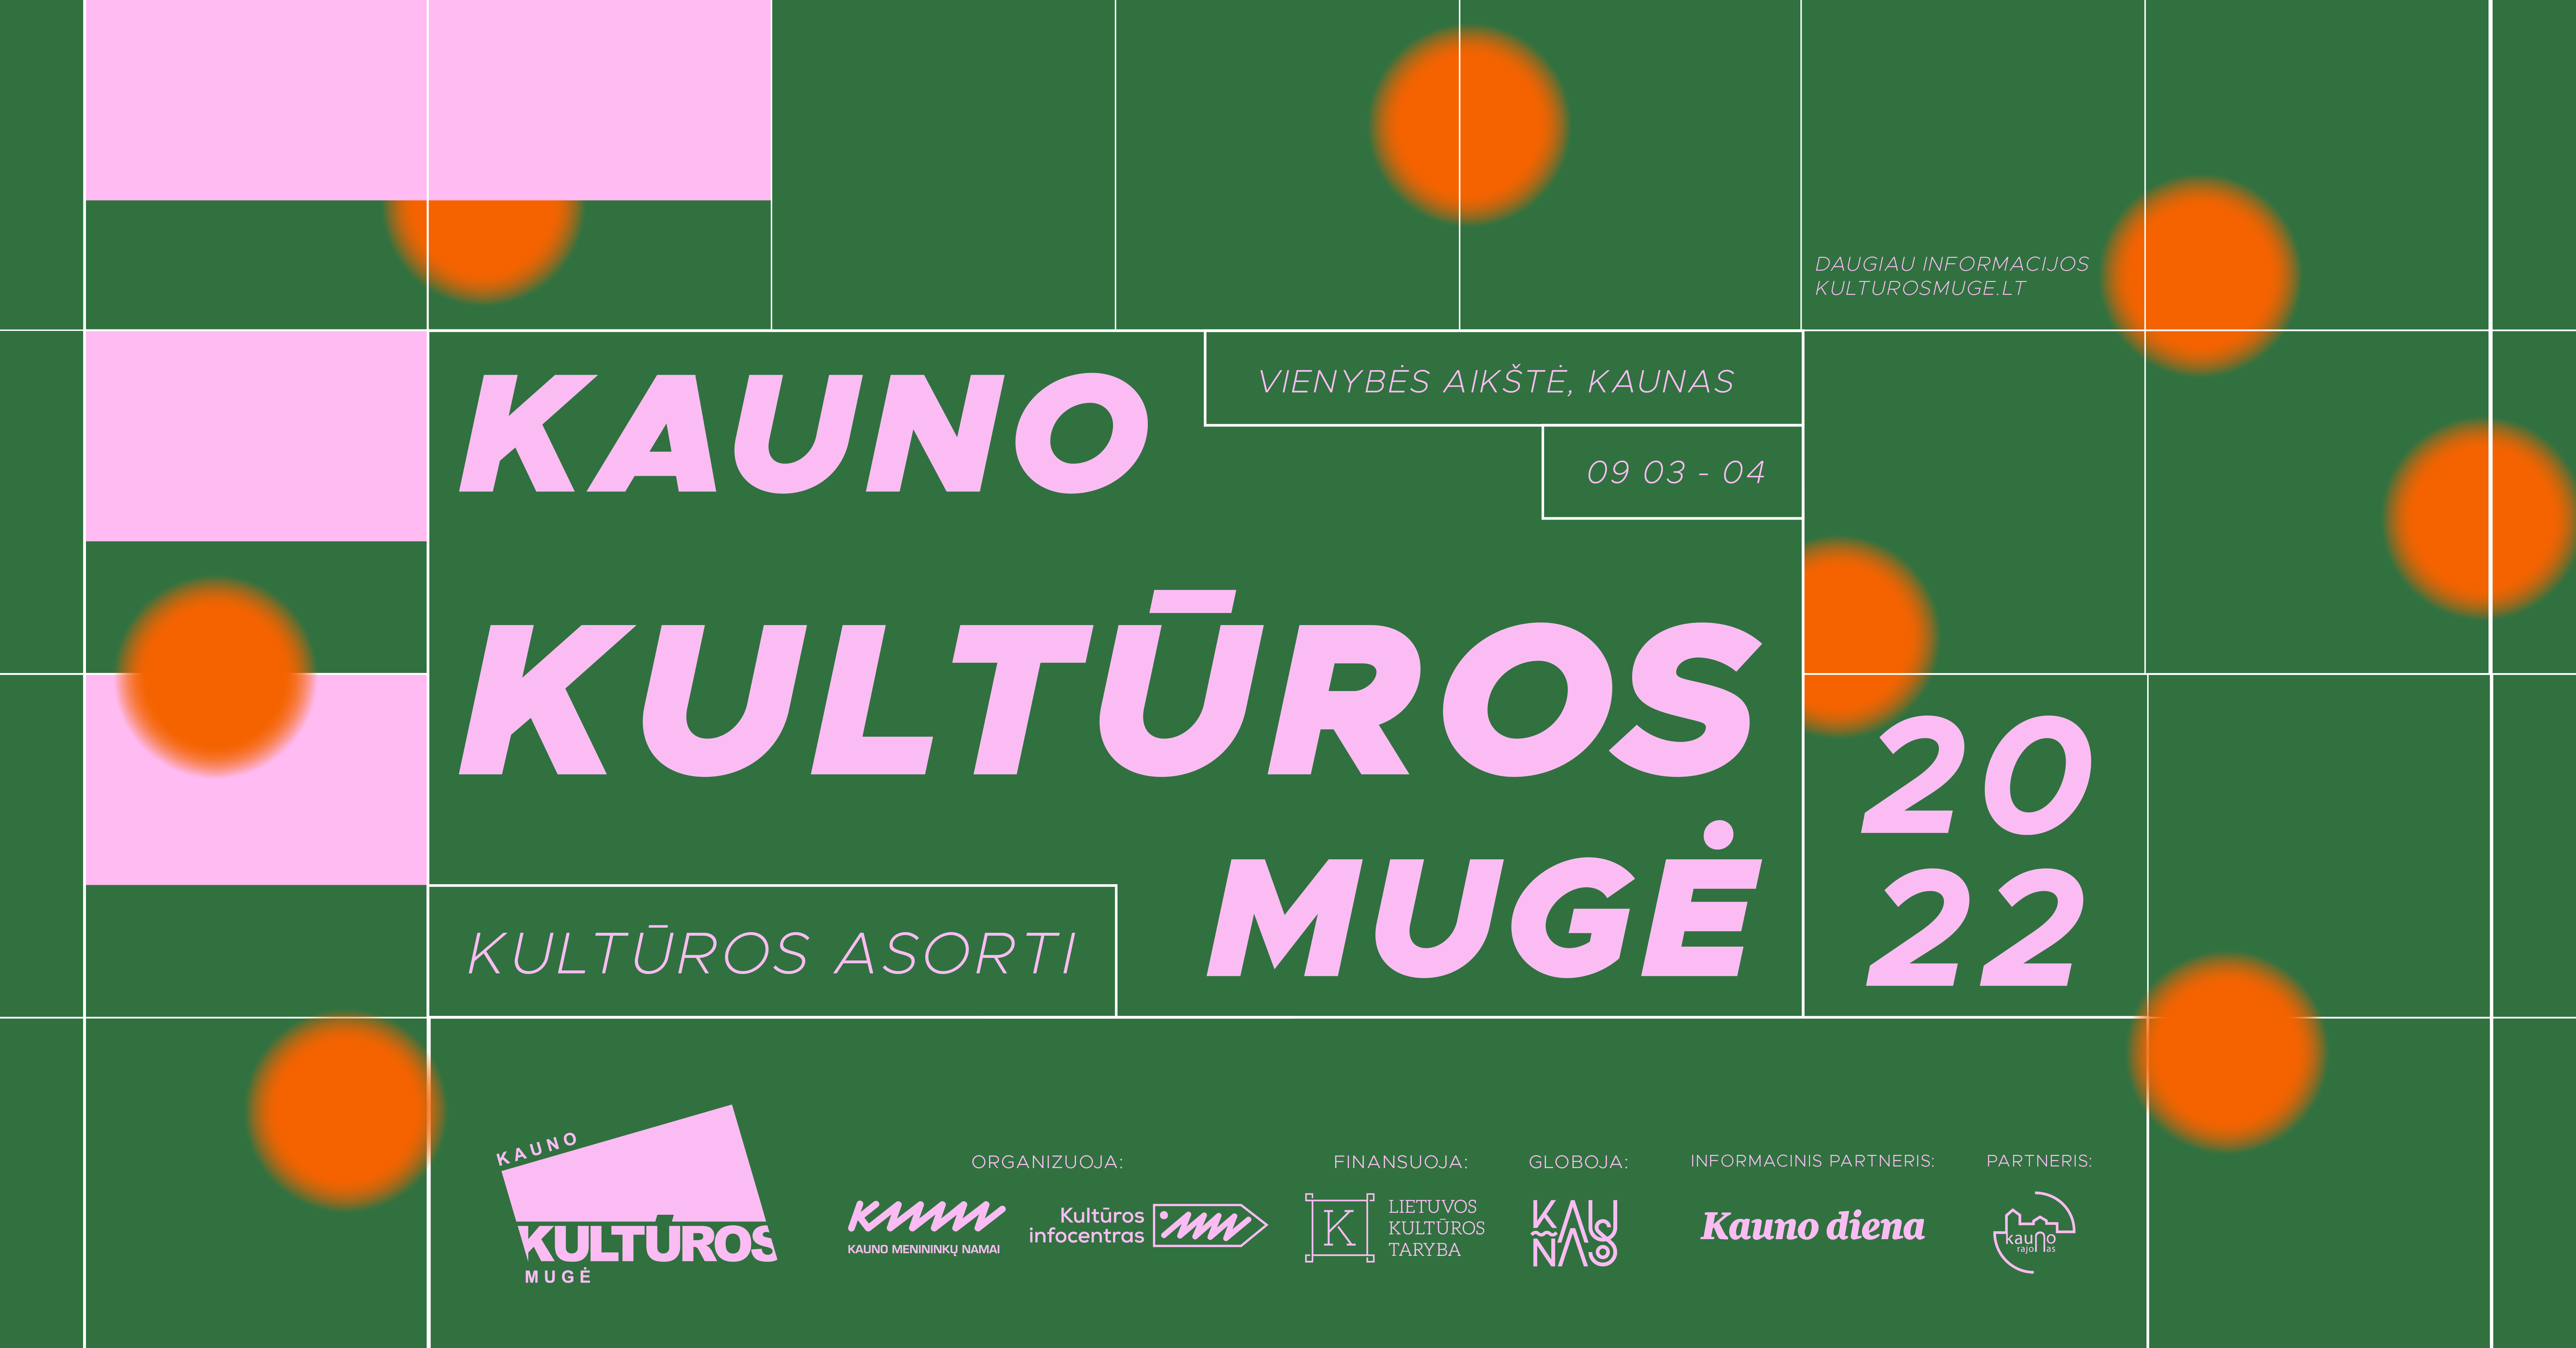 Kauno kultūros mugė 2022 | Kultūros asorti